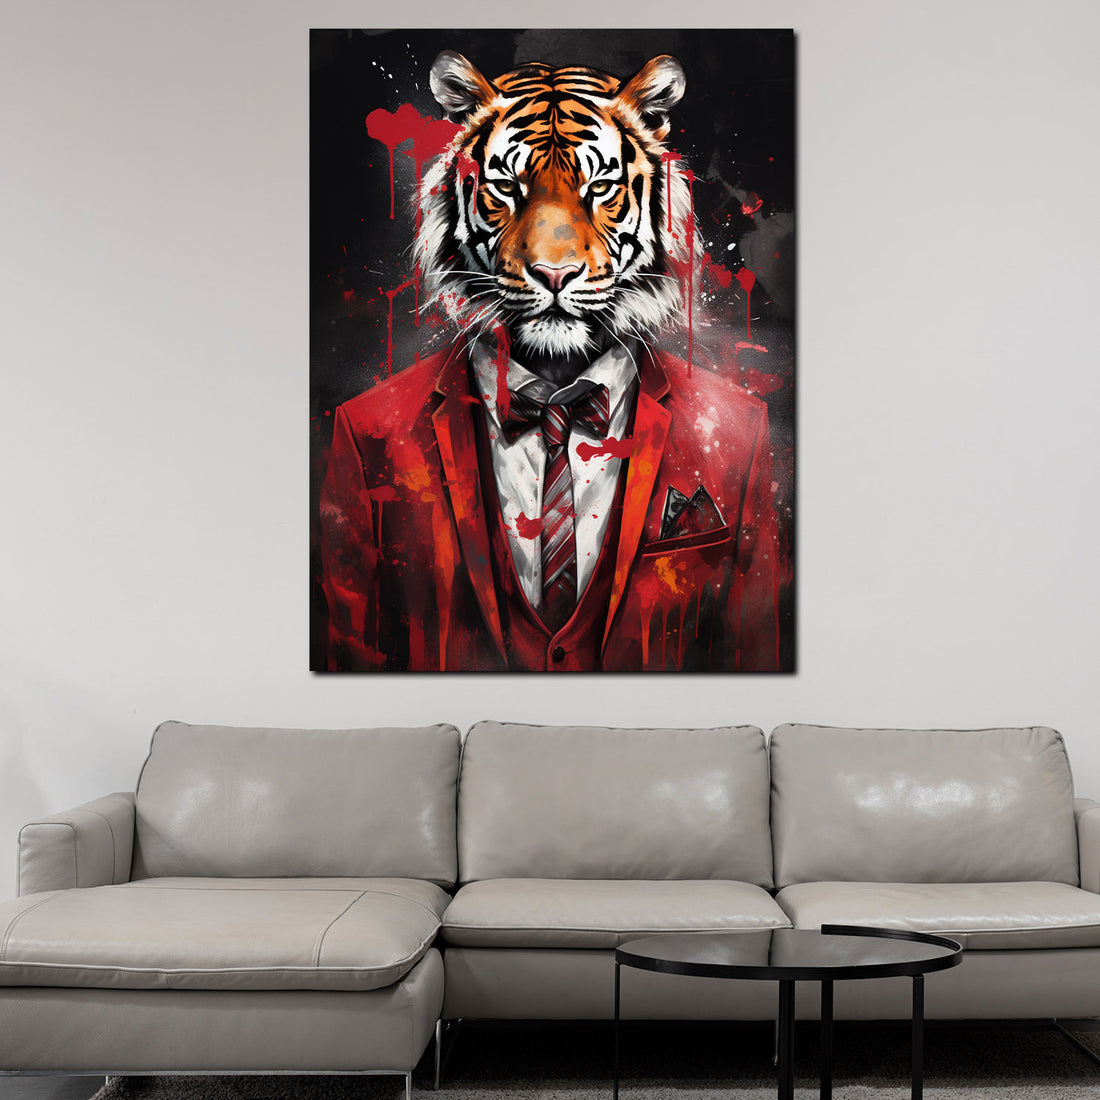 Wandbild Tiger frontal im roten Anzug abstrakt Pop Art